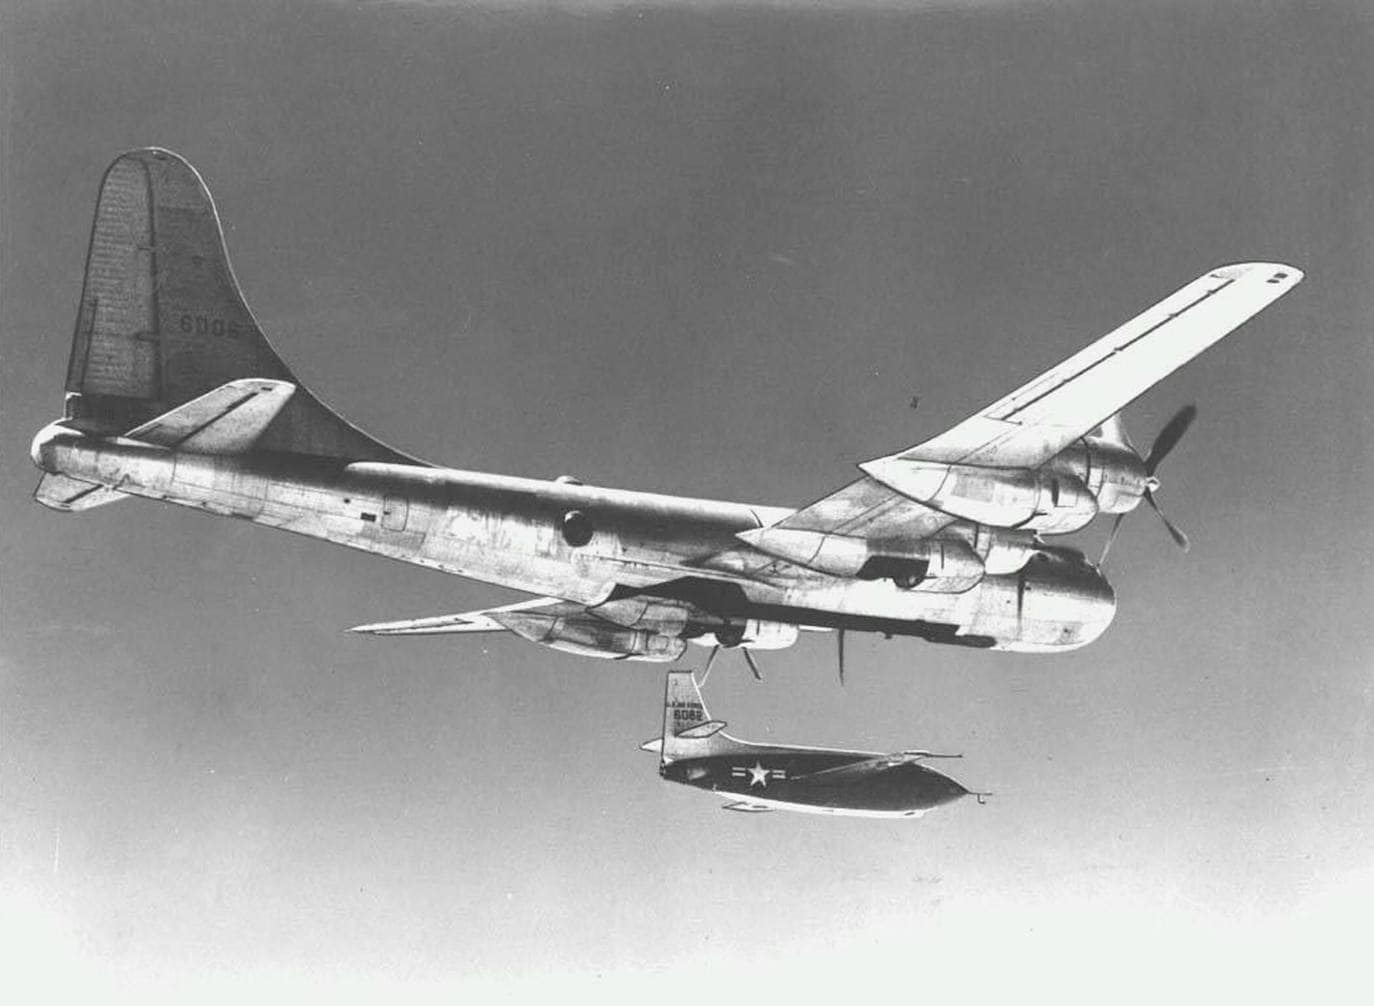 El avión Bell X-1, pilotado por Charles E. Yeager, emerge de las entrañas de un avión de nodriza, antes de romper la barrera del sonido.